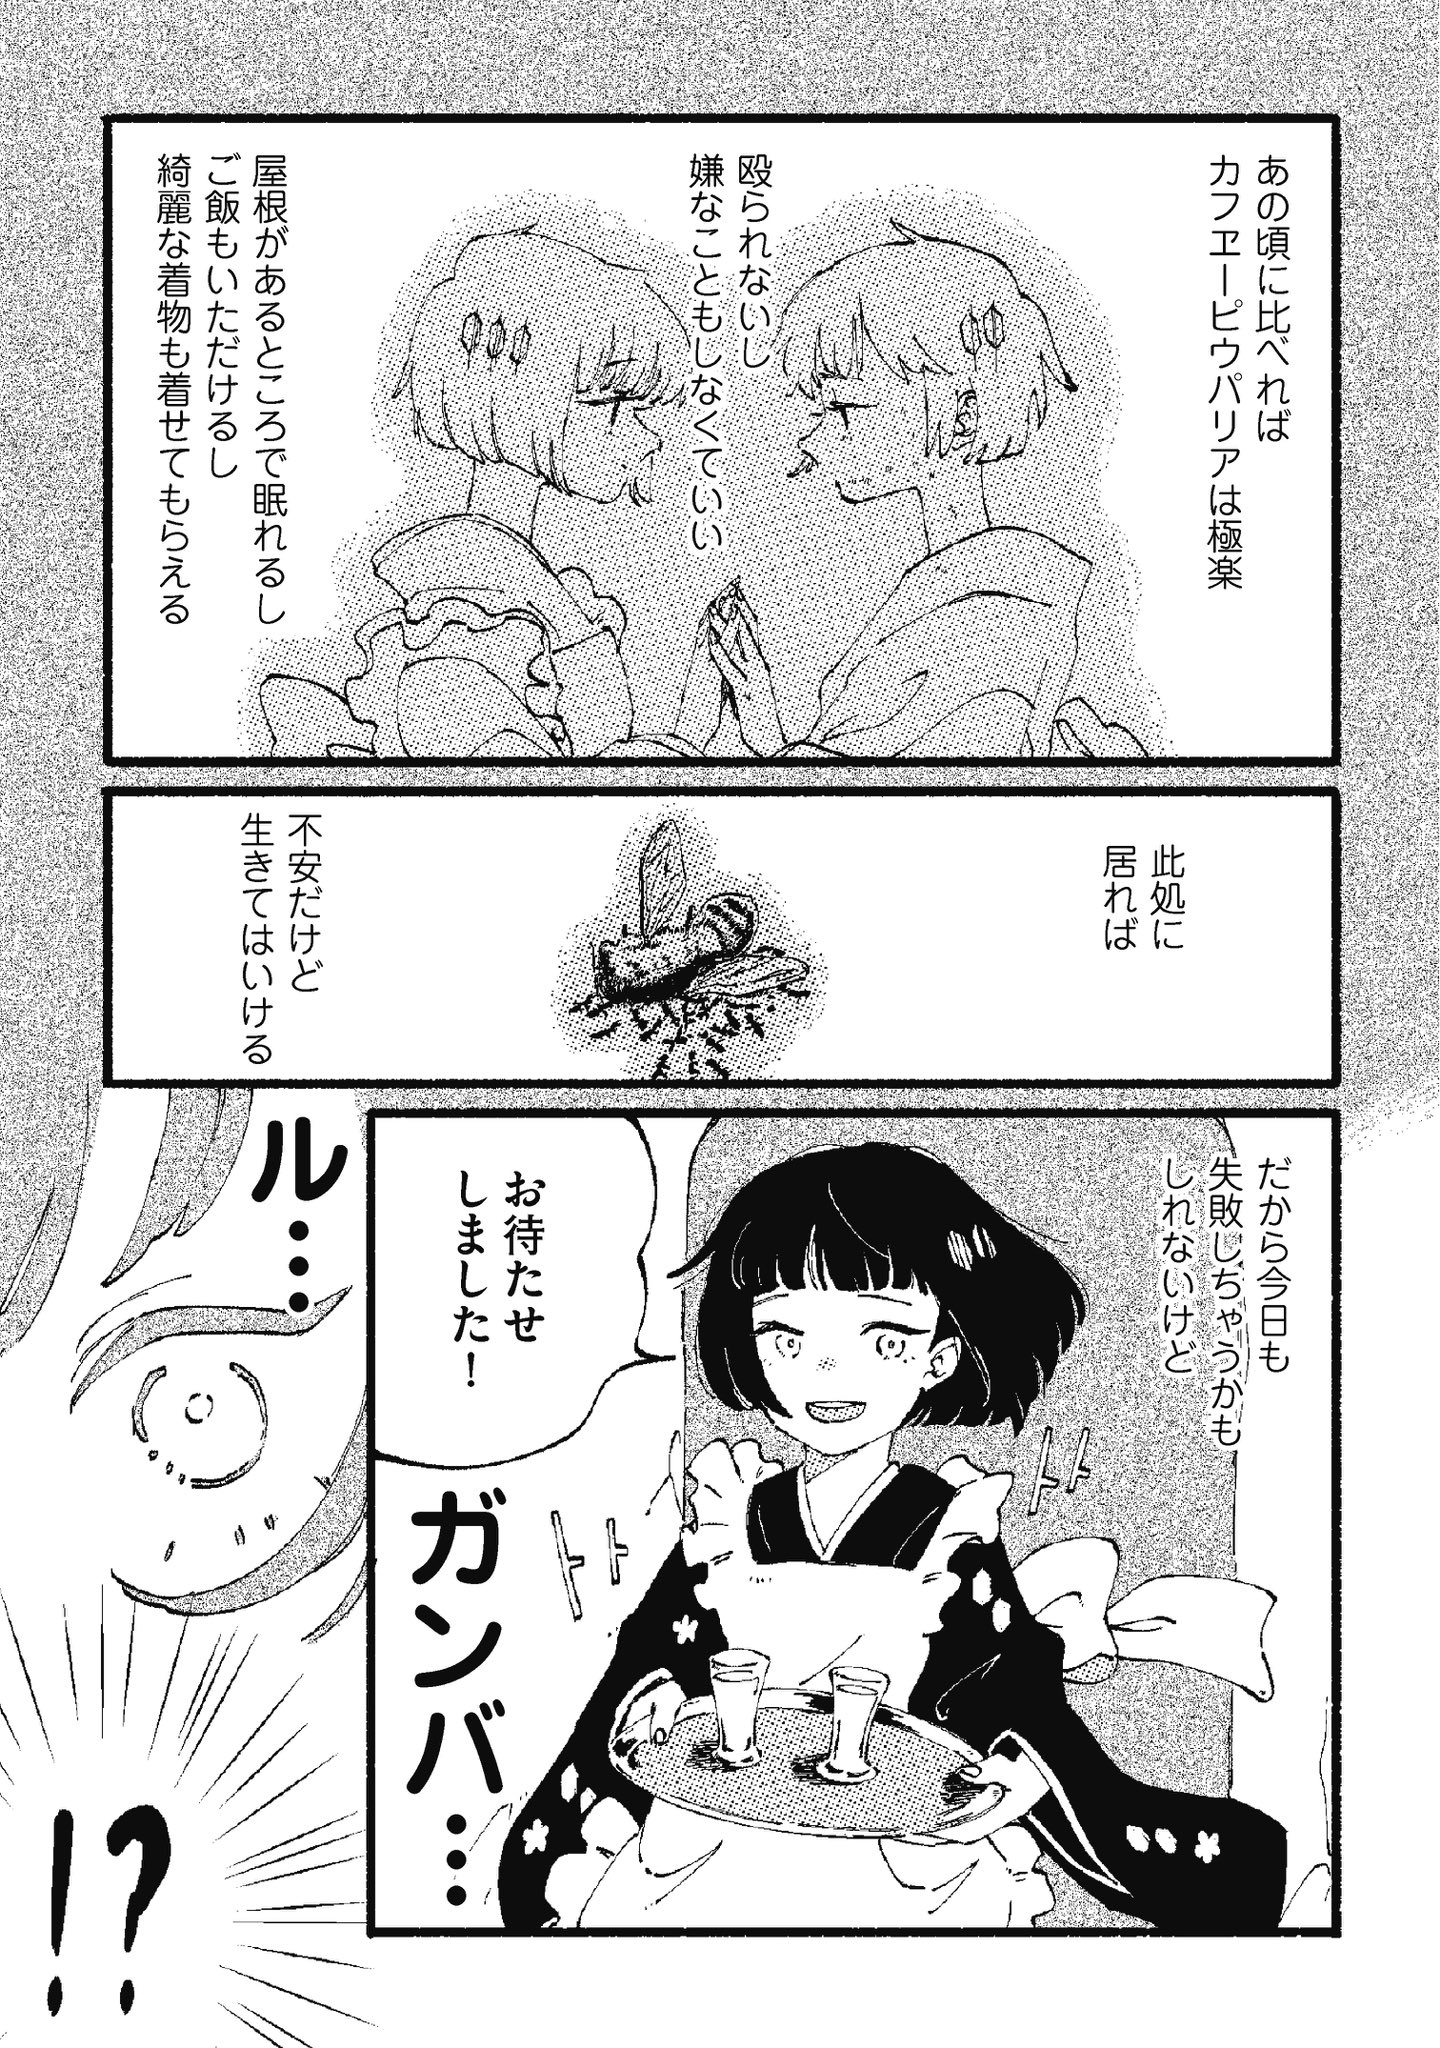 【漫画】カフヱーピウパリアの画像